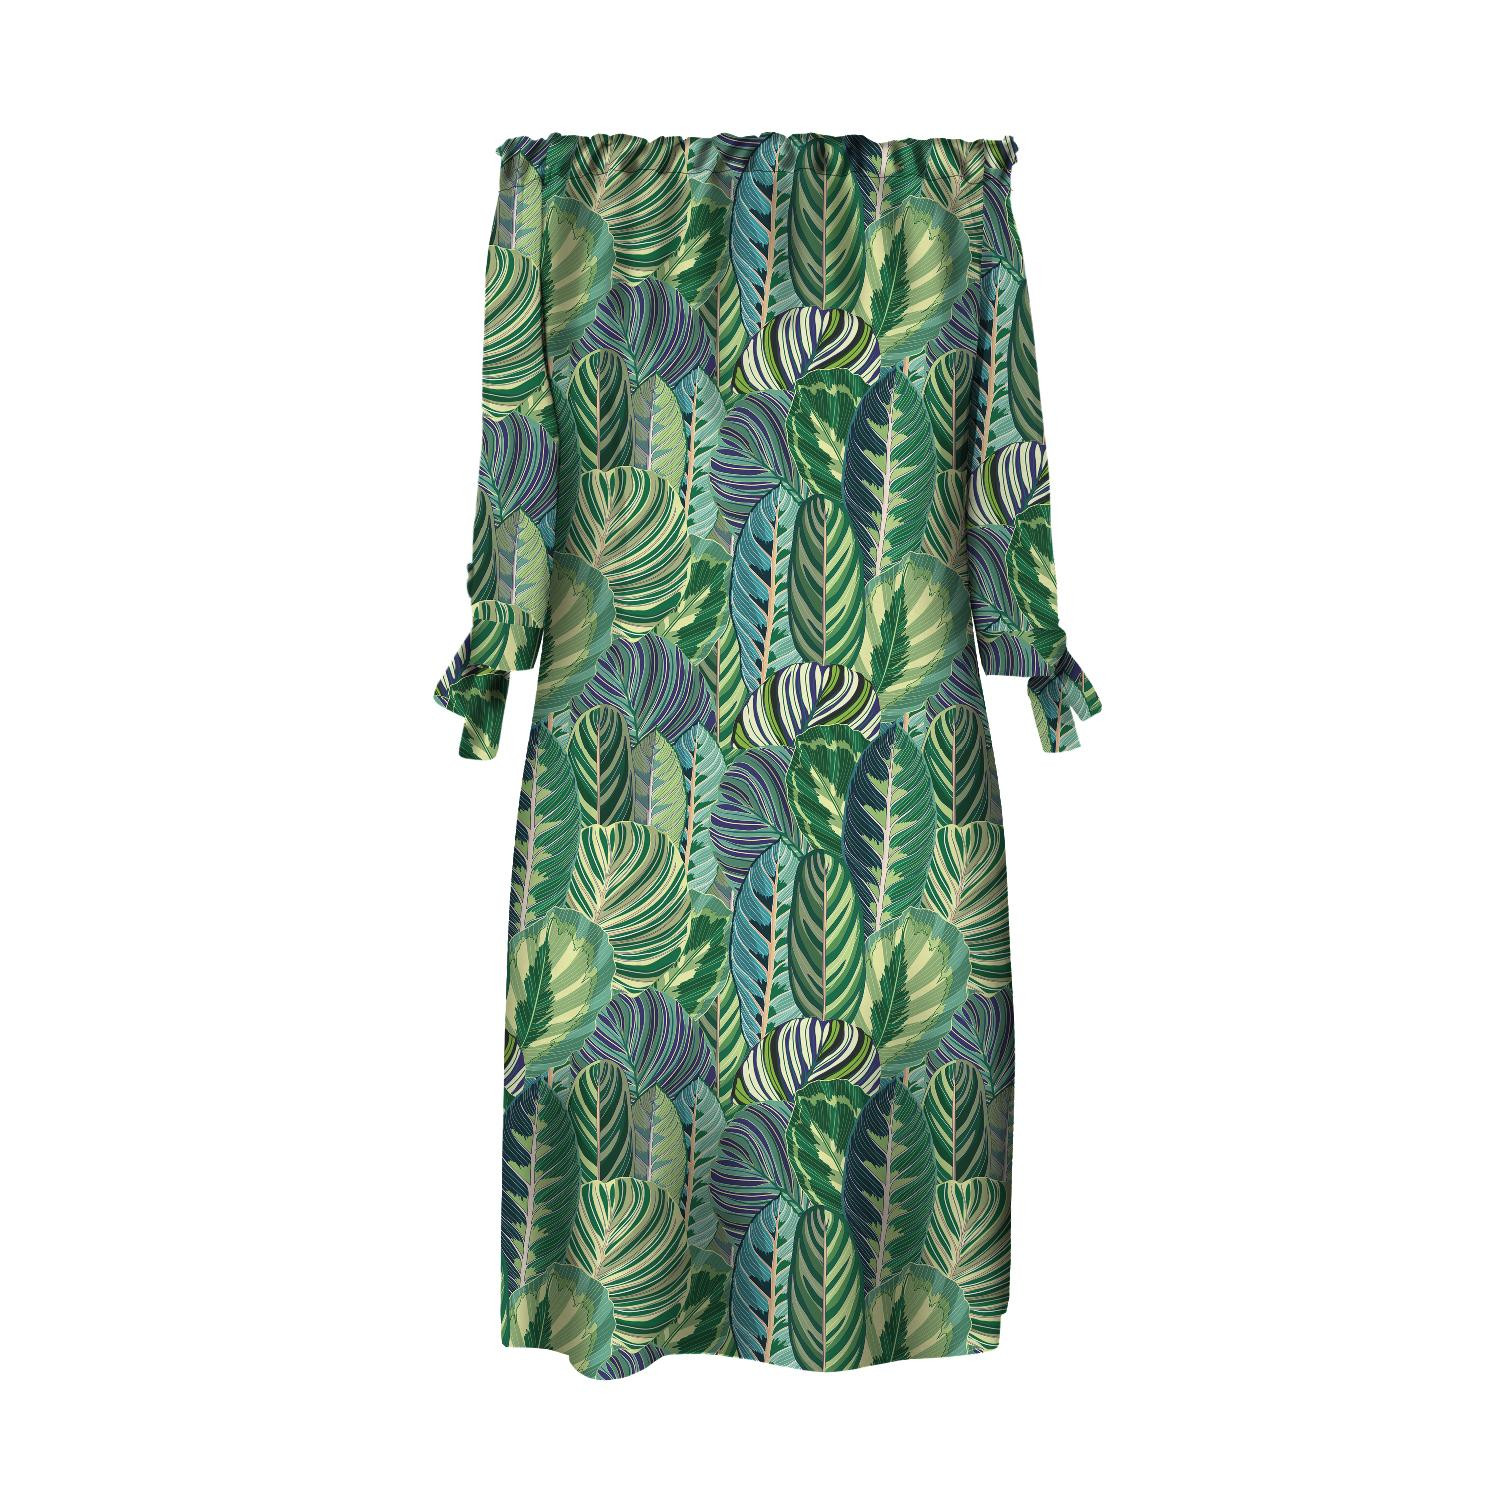 DRESS "CARMEN" - GREEN JUNGLE pat. 1 - sewing set